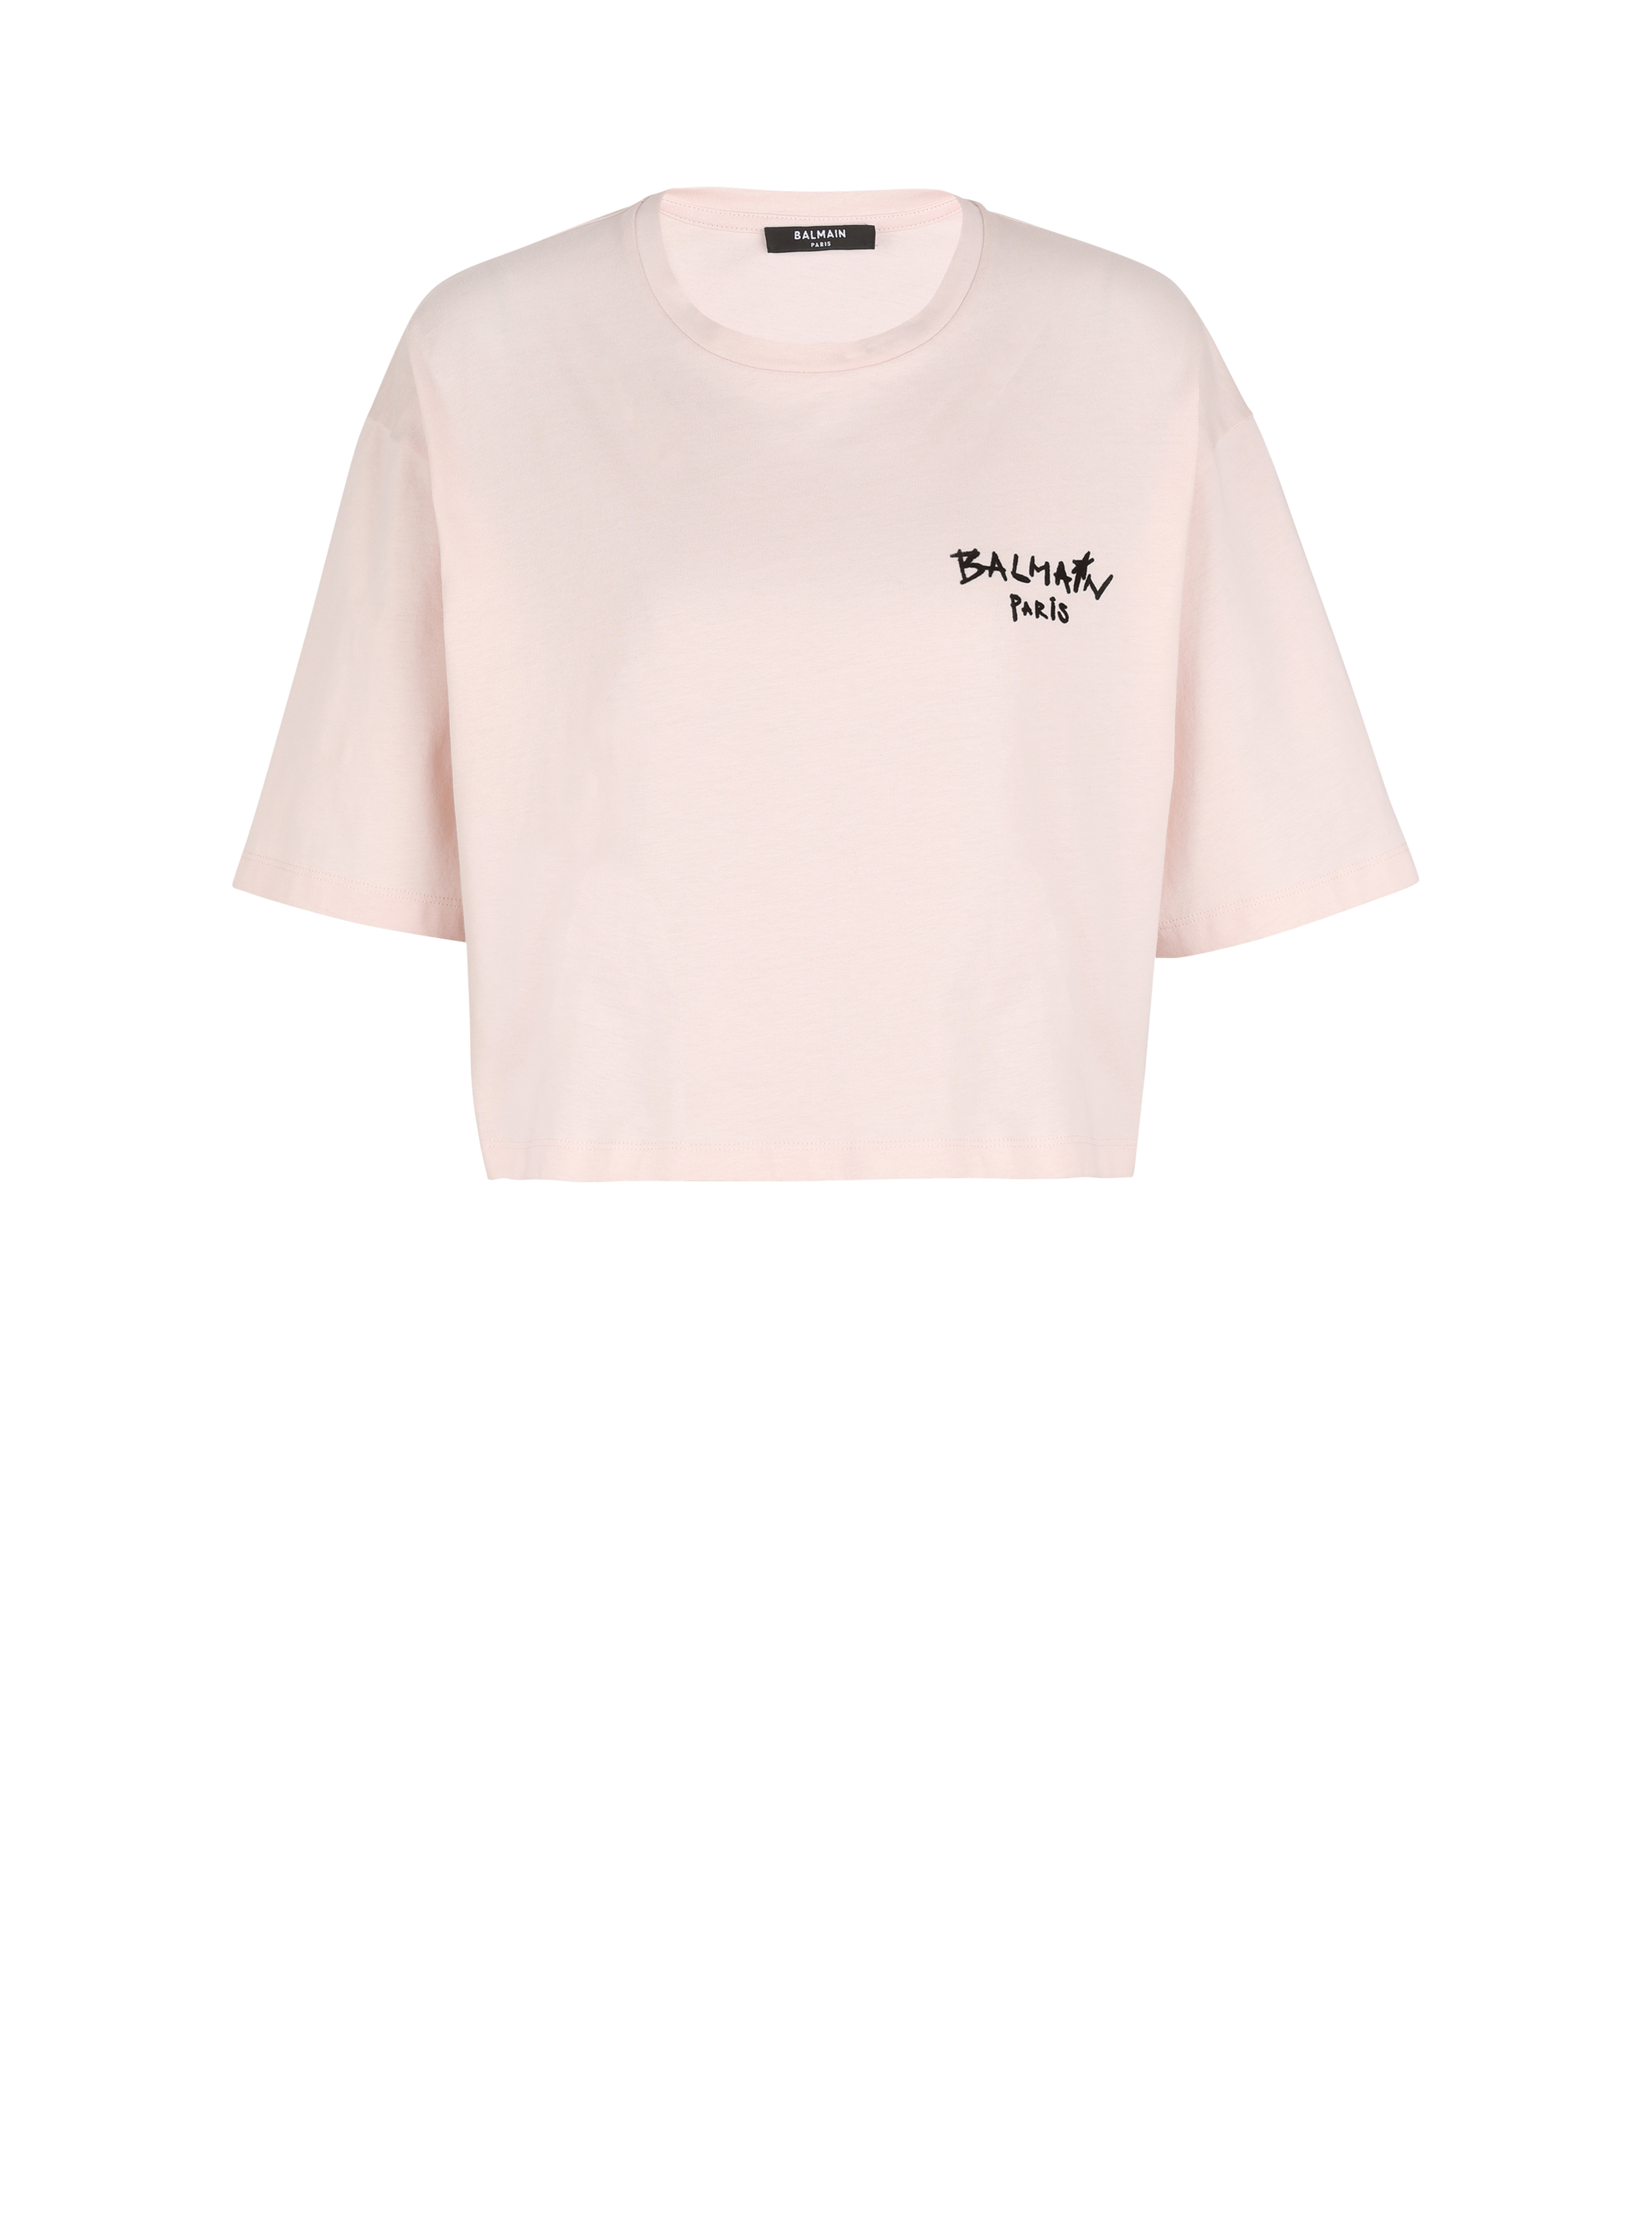 T-shirt corta in cotone con piccolo logo Balmain graffiti floccato, rosa